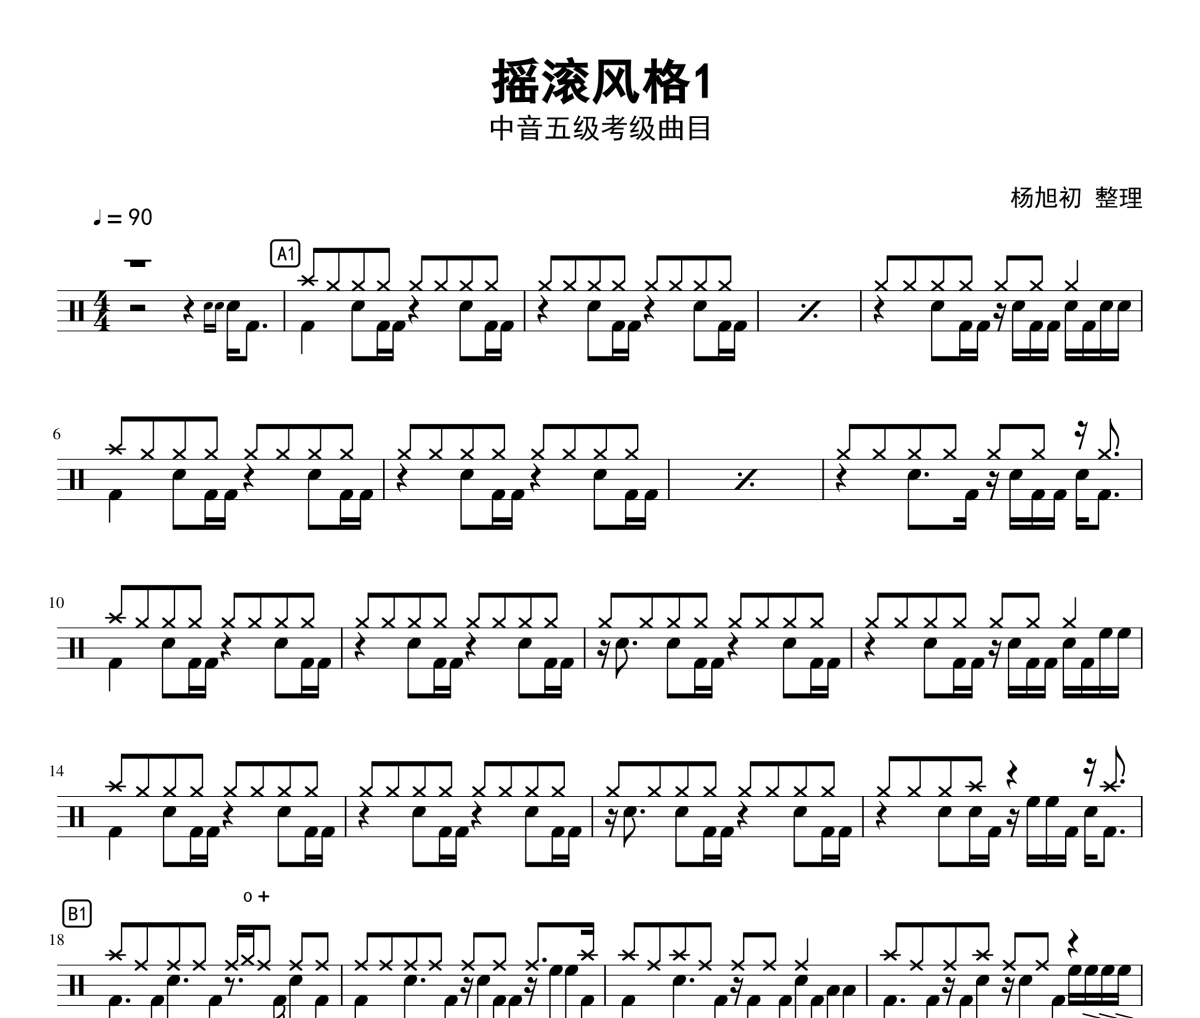 摇滚风格鼓谱 中国音乐学院-摇滚风格(5级)架子鼓谱